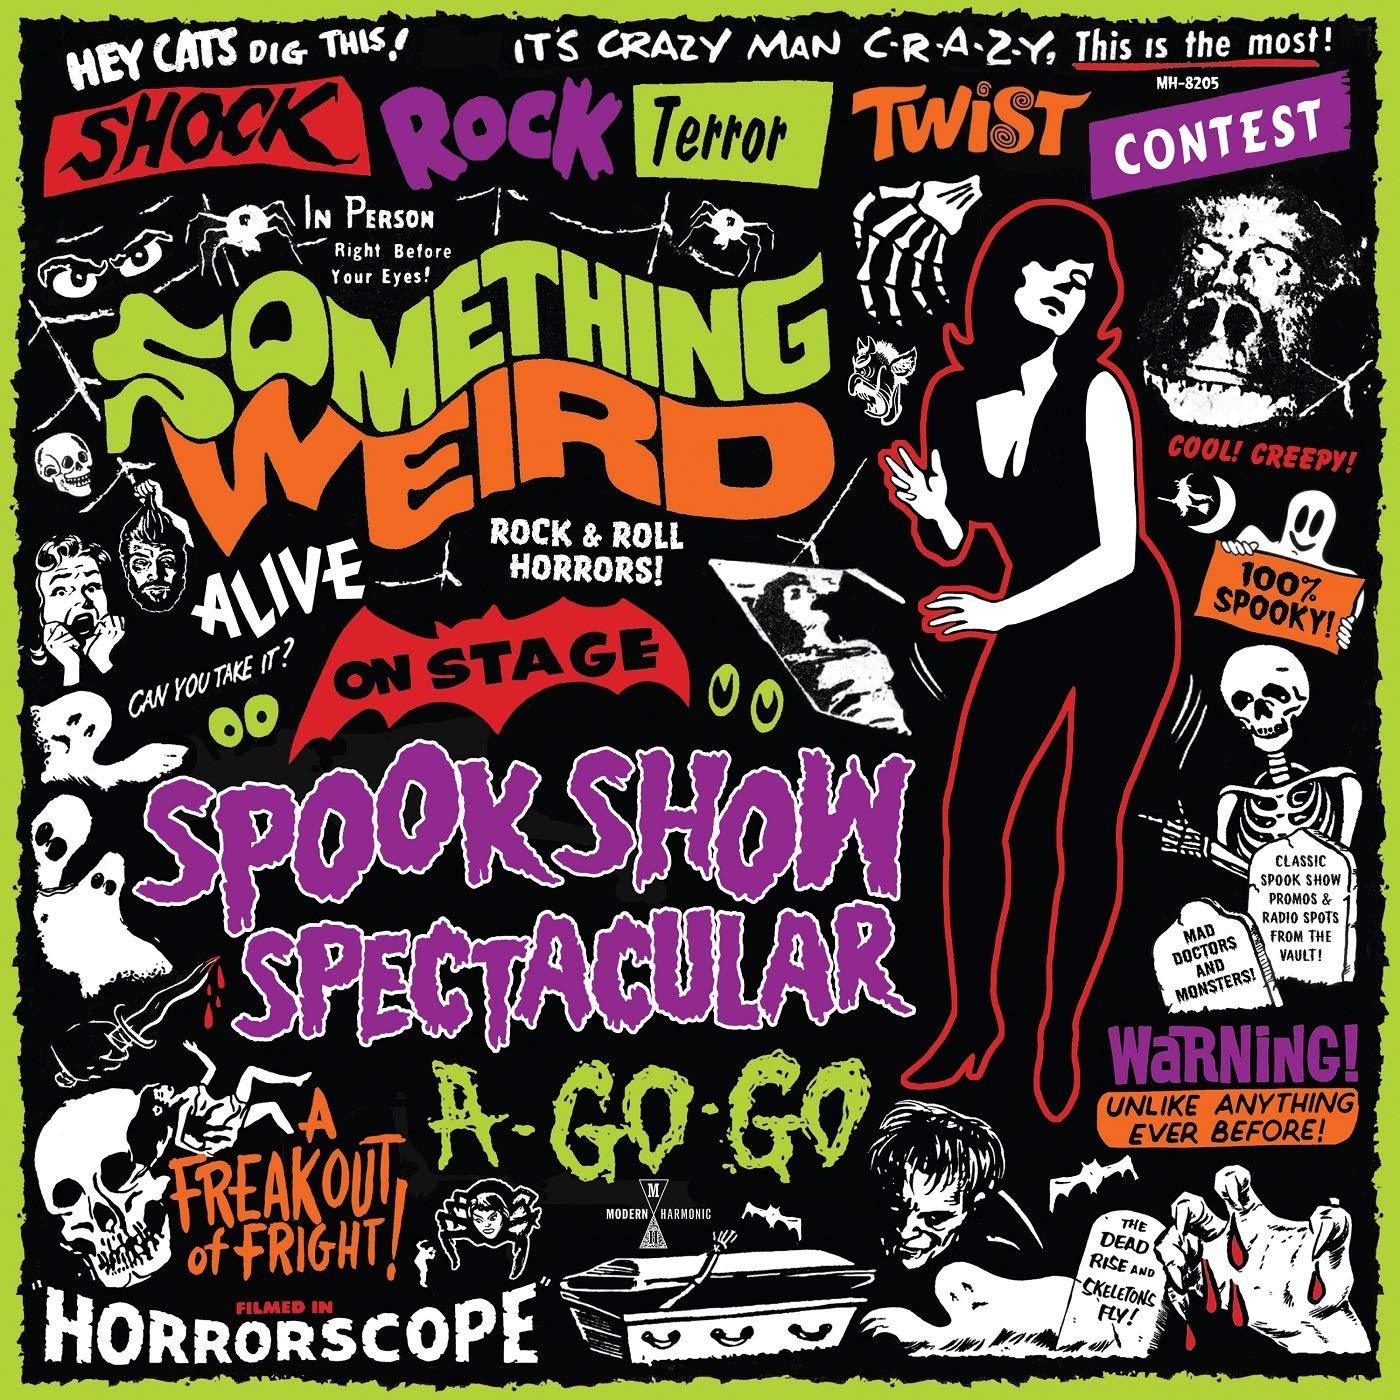 Something Weird - Spook Show Spectacular A Go Go